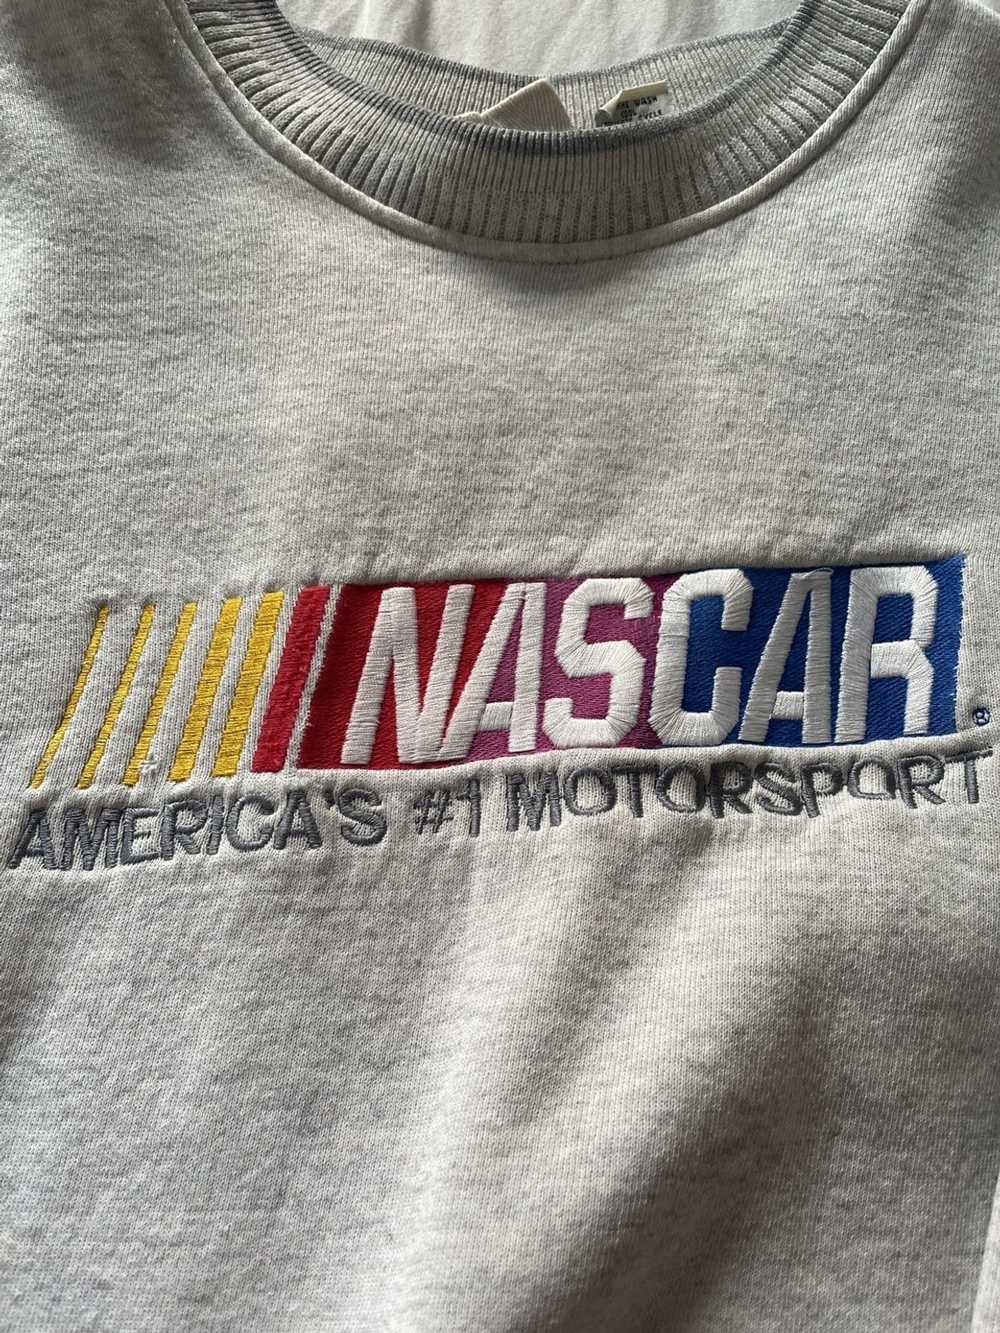 NASCAR Vintage NASCAR sweater - image 1